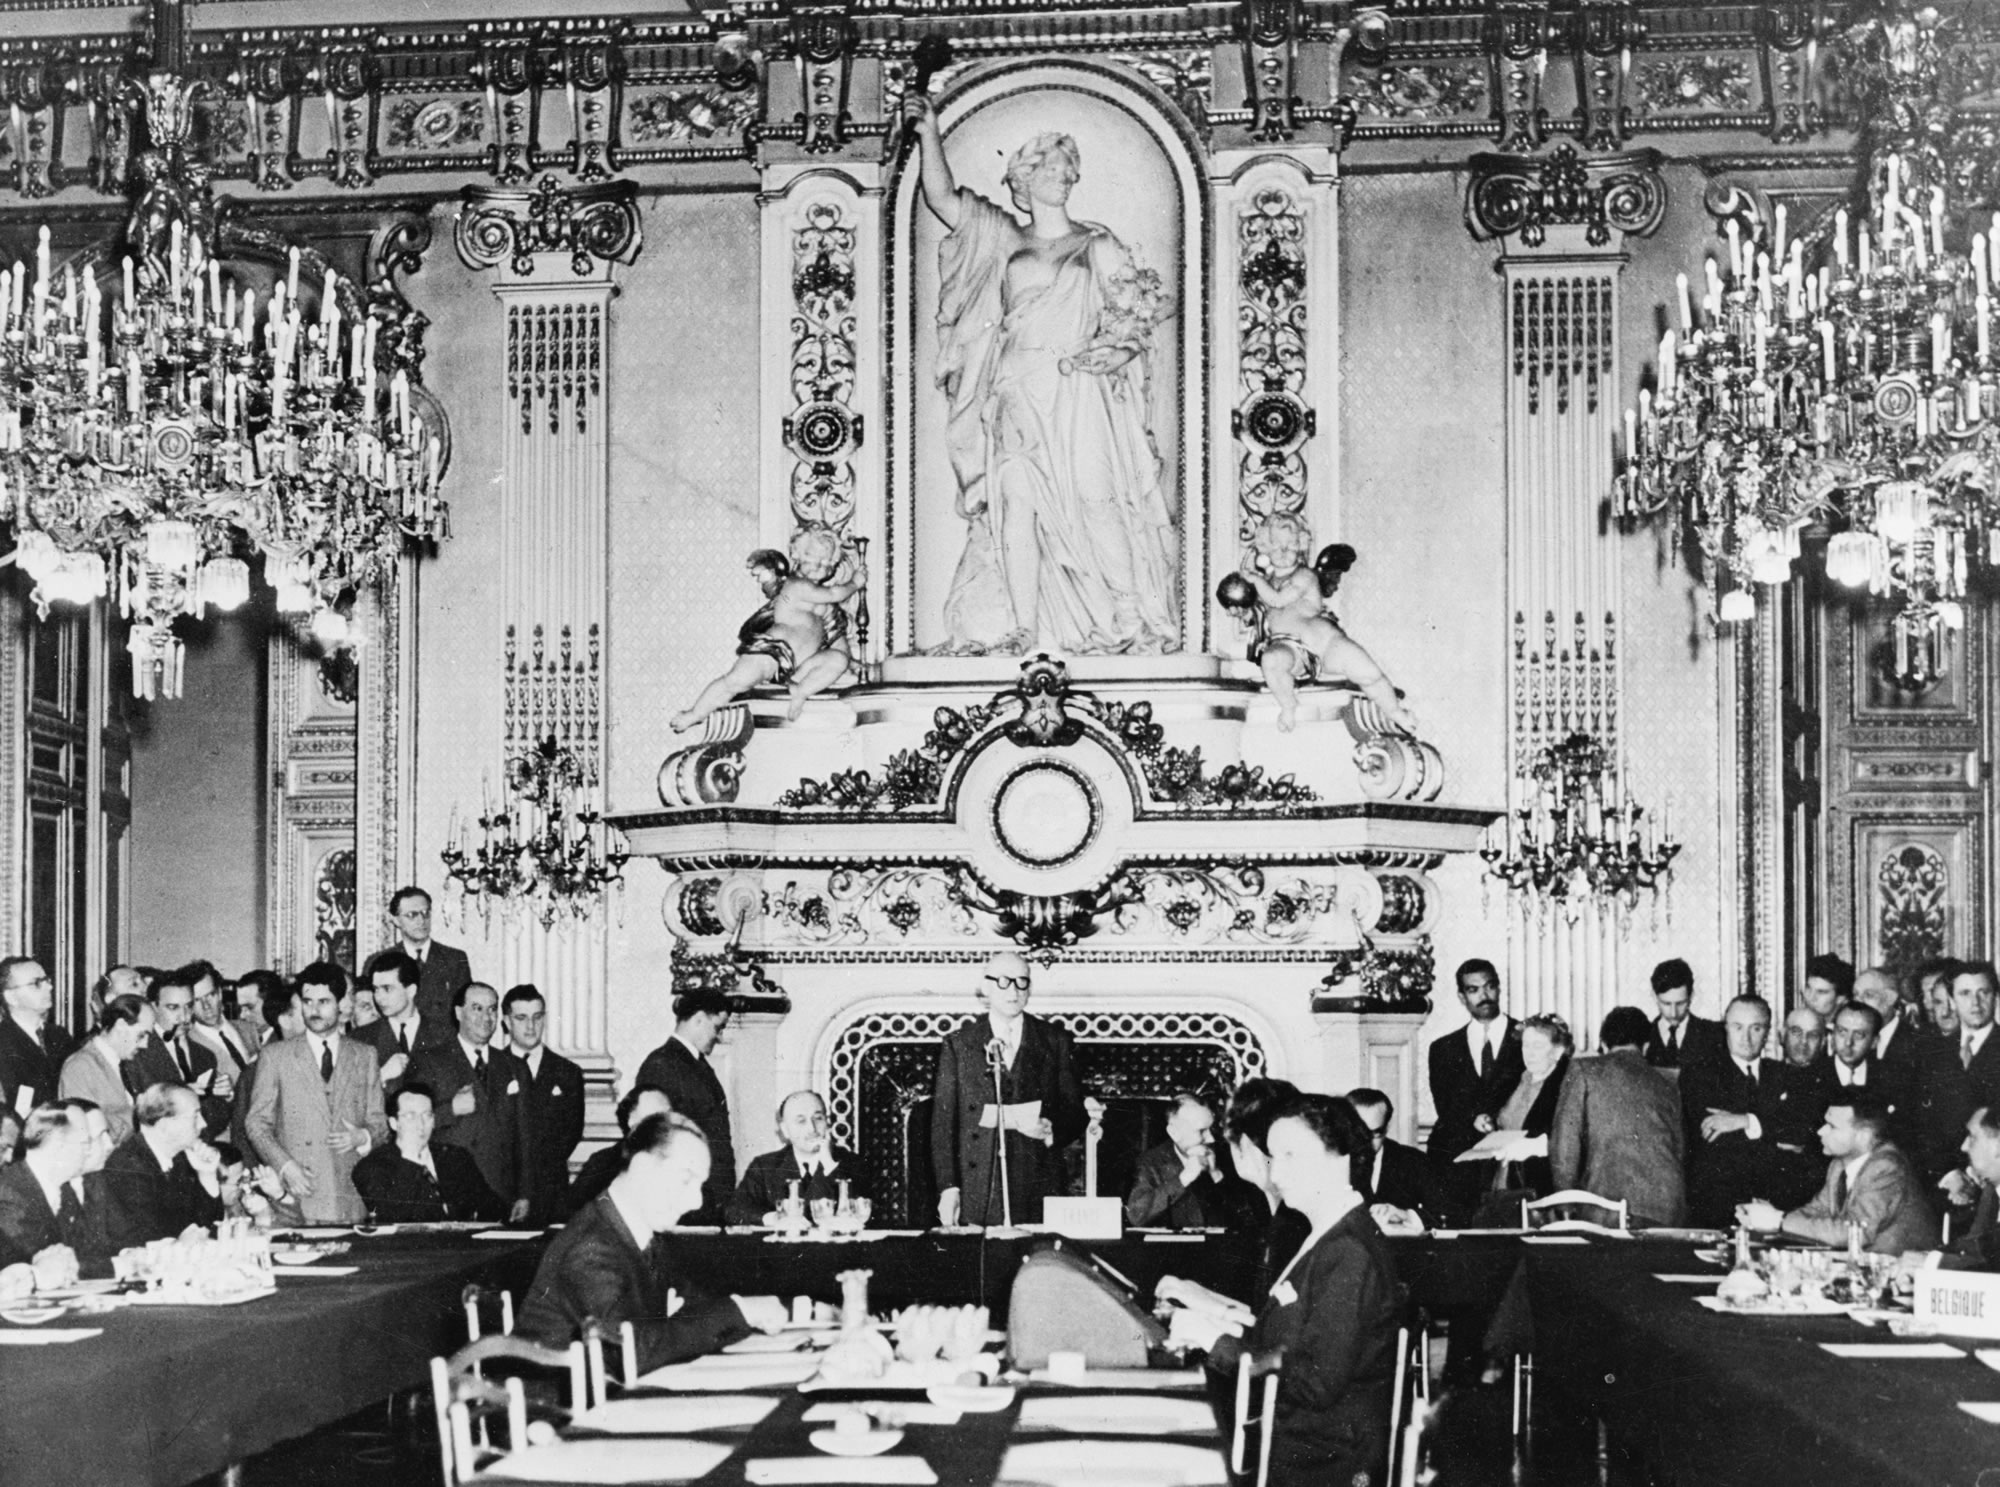 Schumanova deklarácia 9. mája 1950 v Sále s hodinami (Salon de l‘Horloge) na francúzskom ministerstve zahraničných vecí na ulici Quai d’Orsay v Paríži: Francúzsky minister zahraničných vecí Robert Schuman navrhol, aby sa európske odvetvie uhlia a ocele spojilo a aby sa vytvorilo Európske spoločenstvo uhlia a ocele. Predpokladalo sa, že vojna medzi zúčastnenými krajinami tak bude nielen nemysliteľná, ale doslova nemožná.